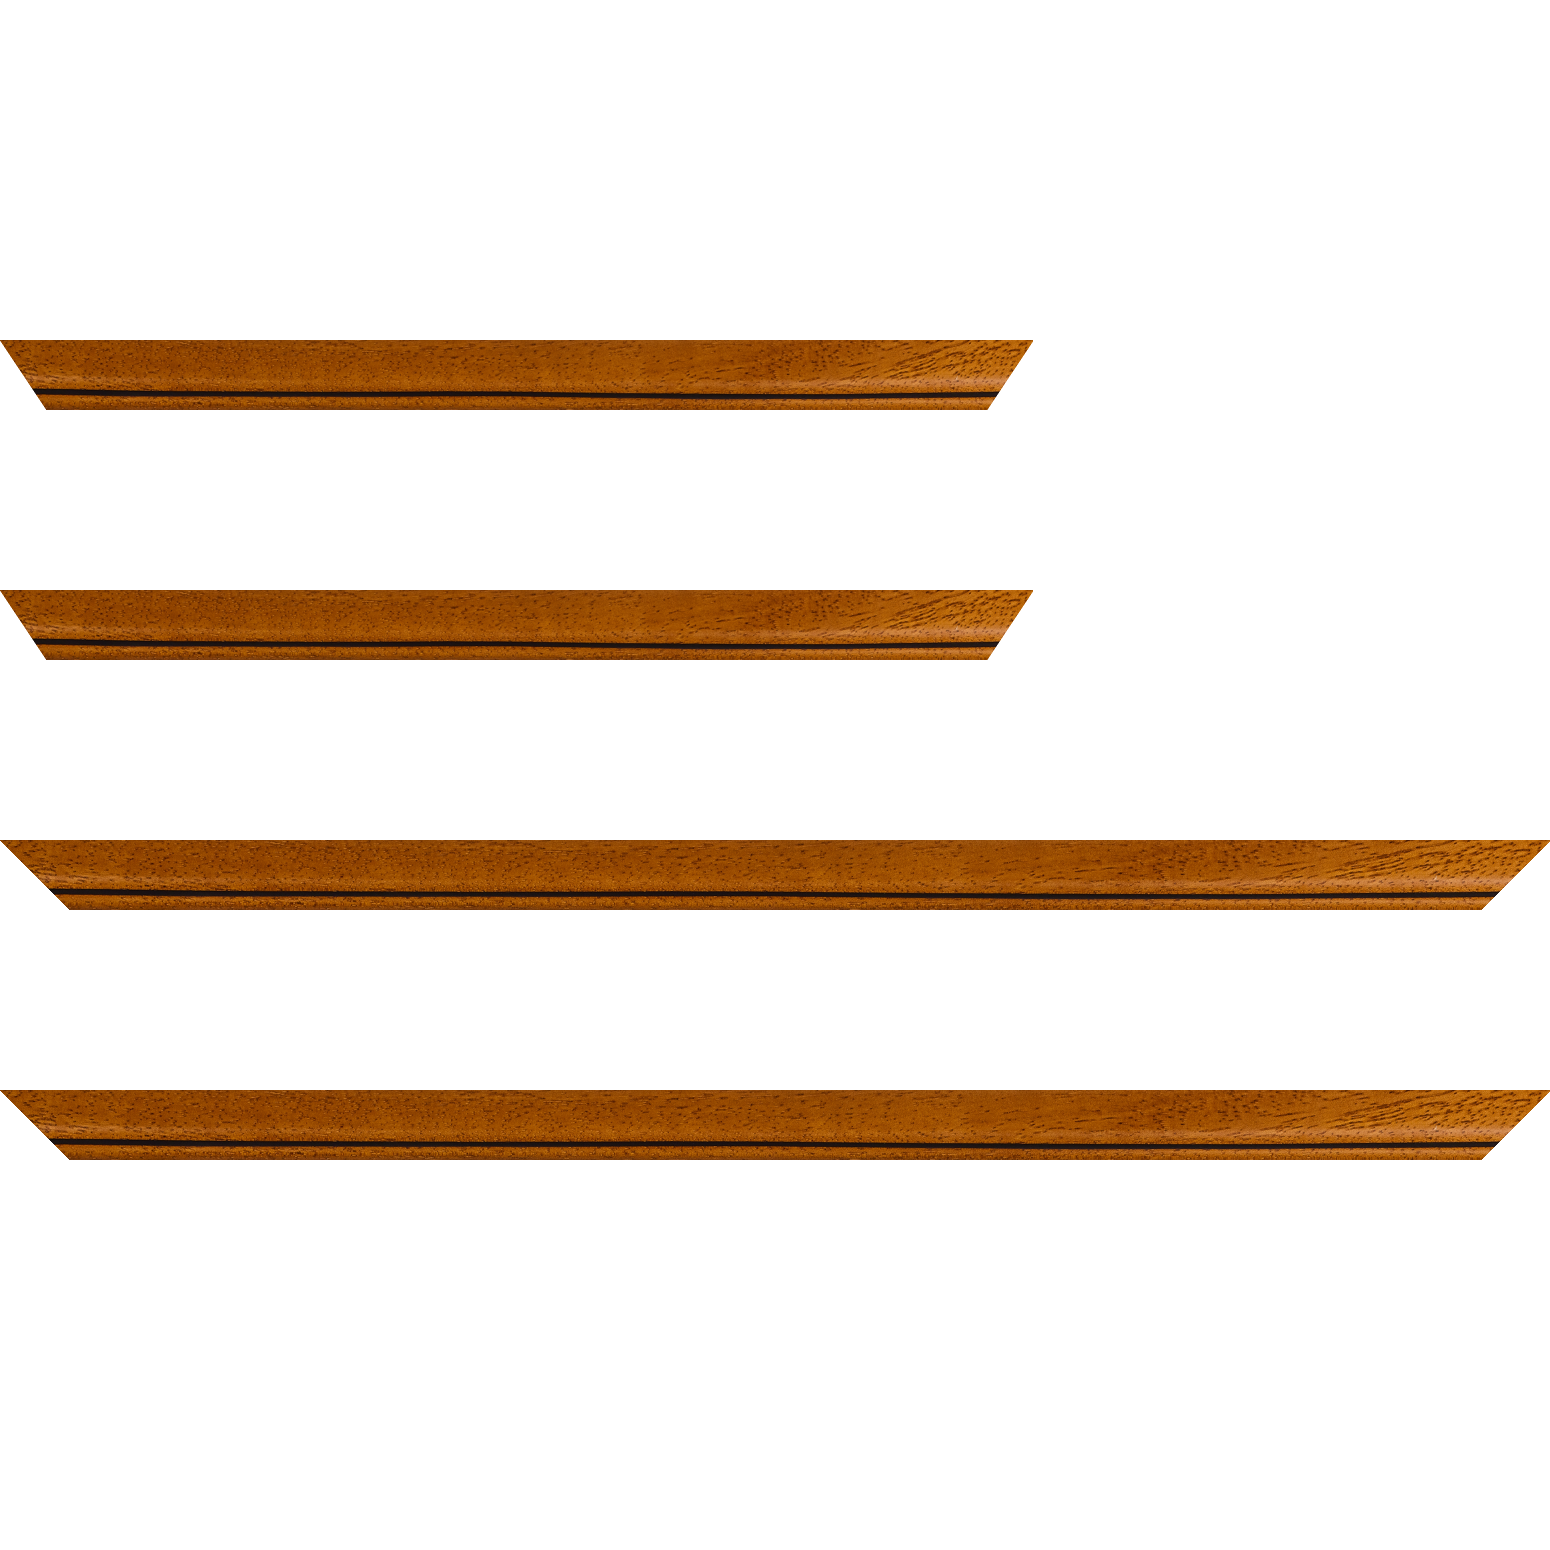 Baguette bois profil bombé largeur 2.4cm couleur marron ton bois satiné filet noir - 24x30